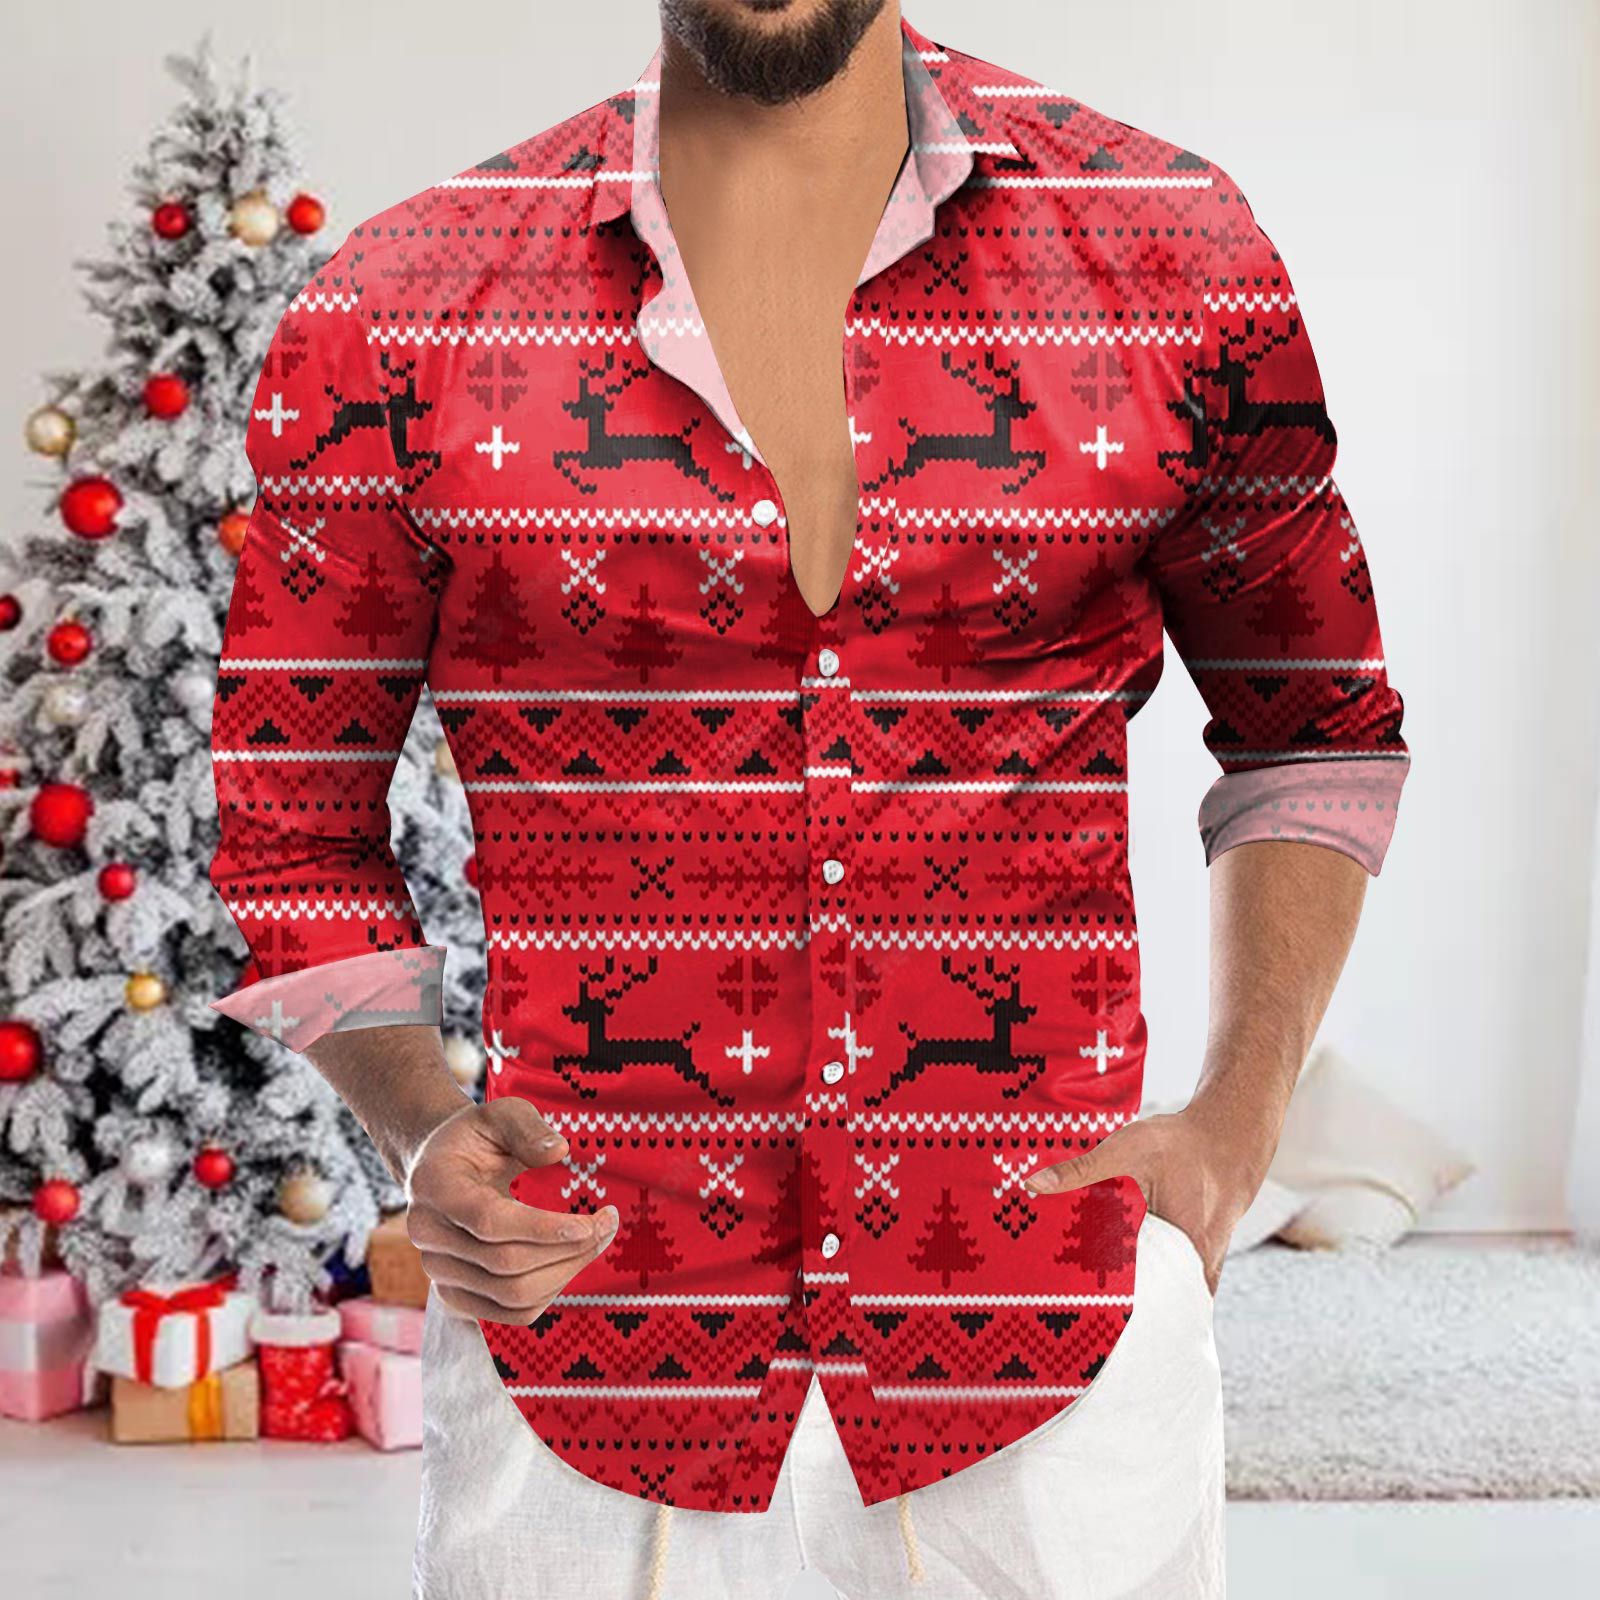 Santa Claus Printed Shirt